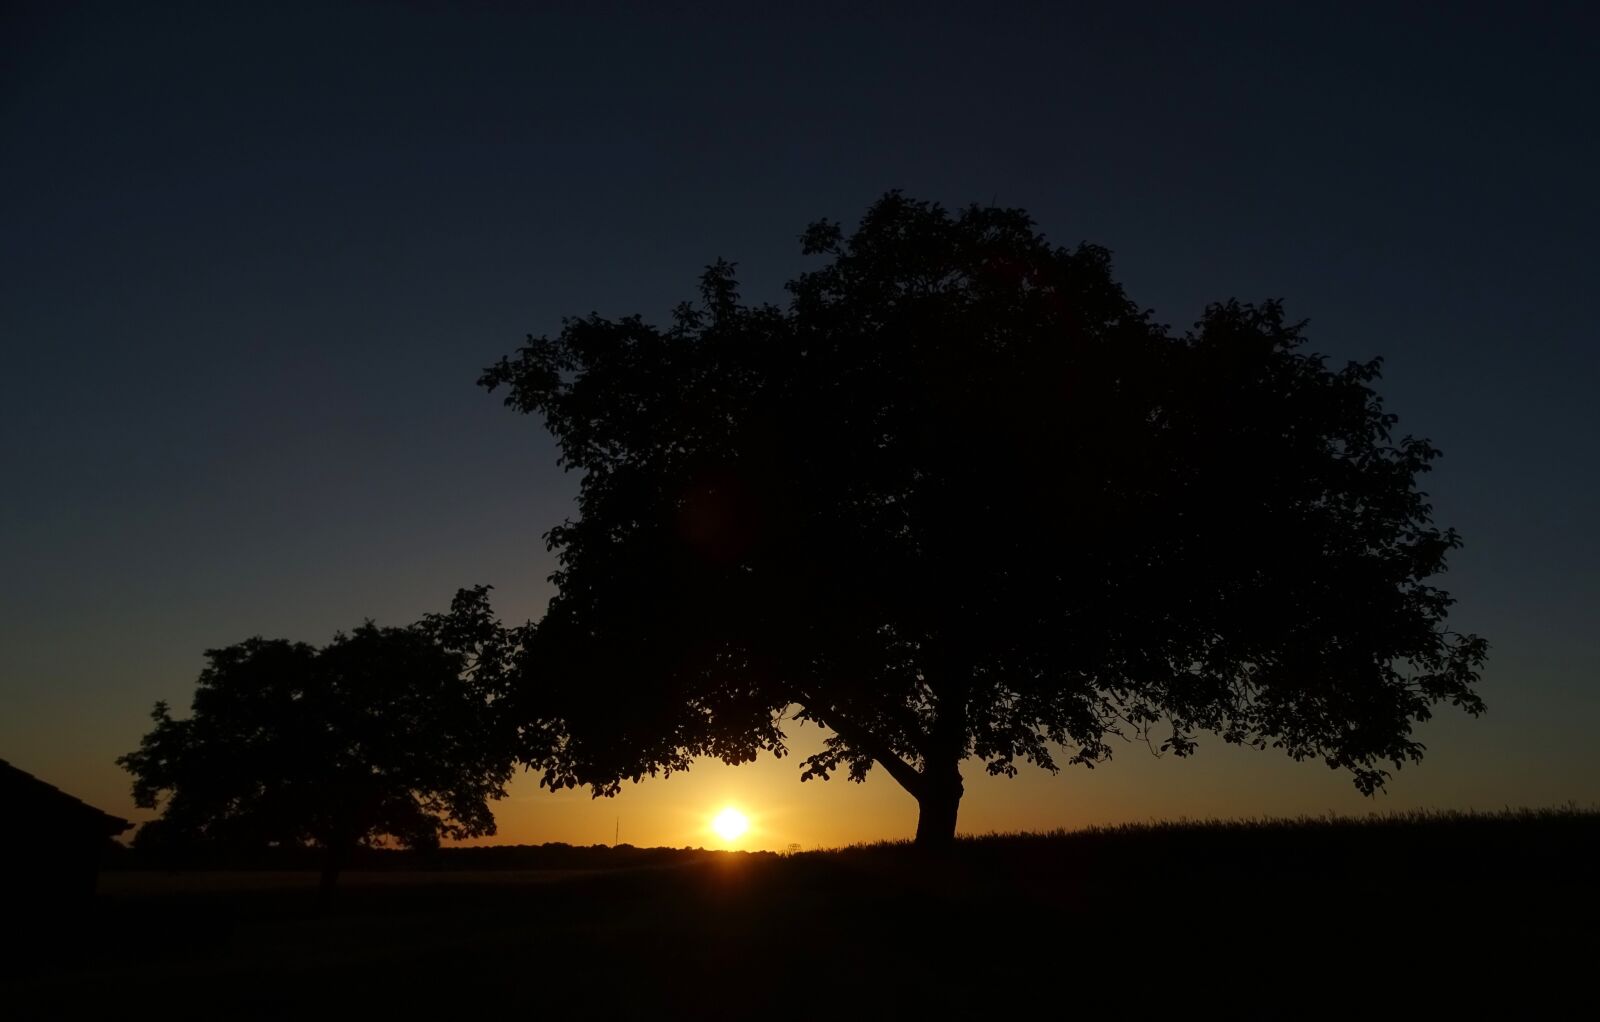 Sony Cyber-shot DSC-HX400V sample photo. Sunset, tree, landscape photography